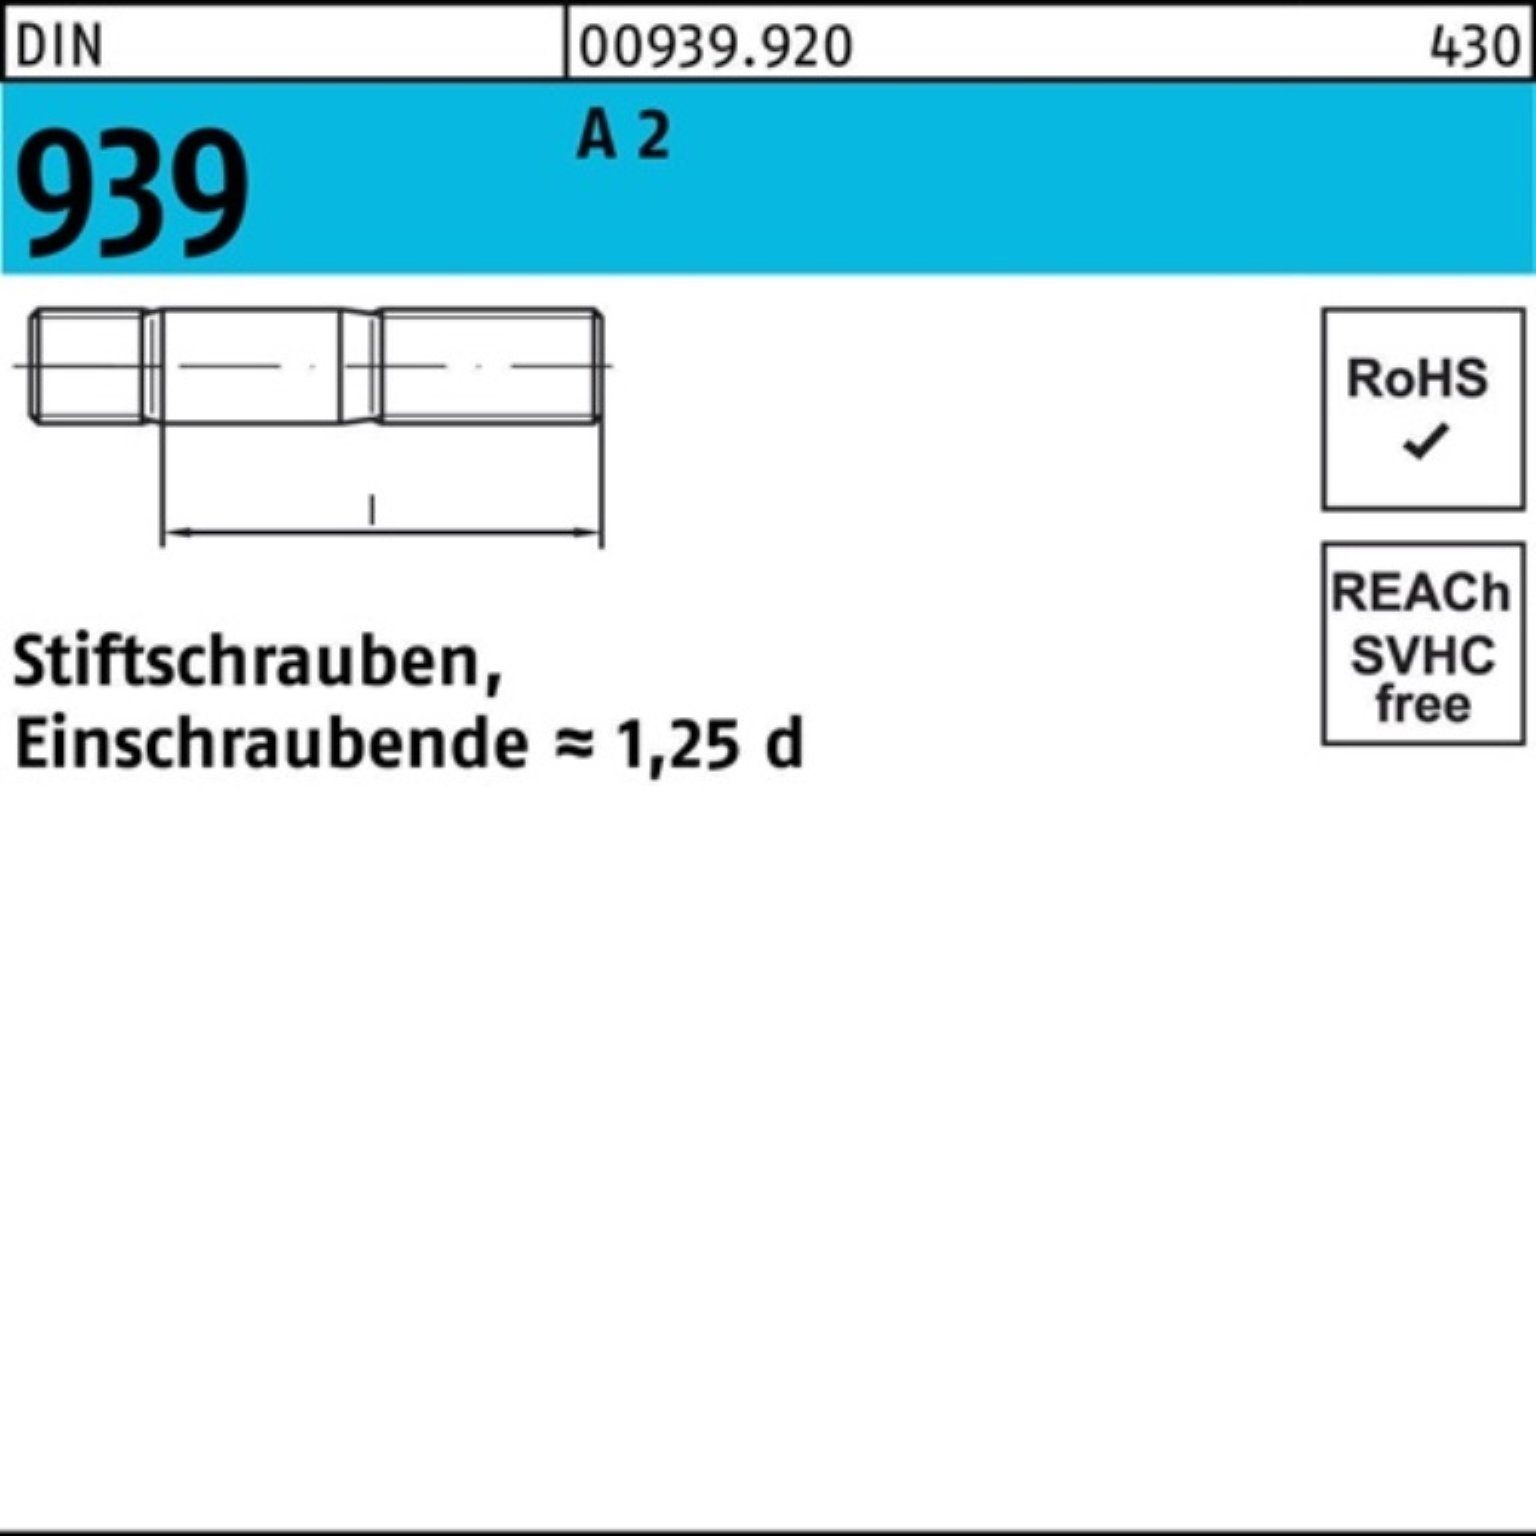 Reyher Stiftschraube 100er Pack 10 55 A 2 S 939 DIN Stiftschraube M16x Einschraubende=1,25d